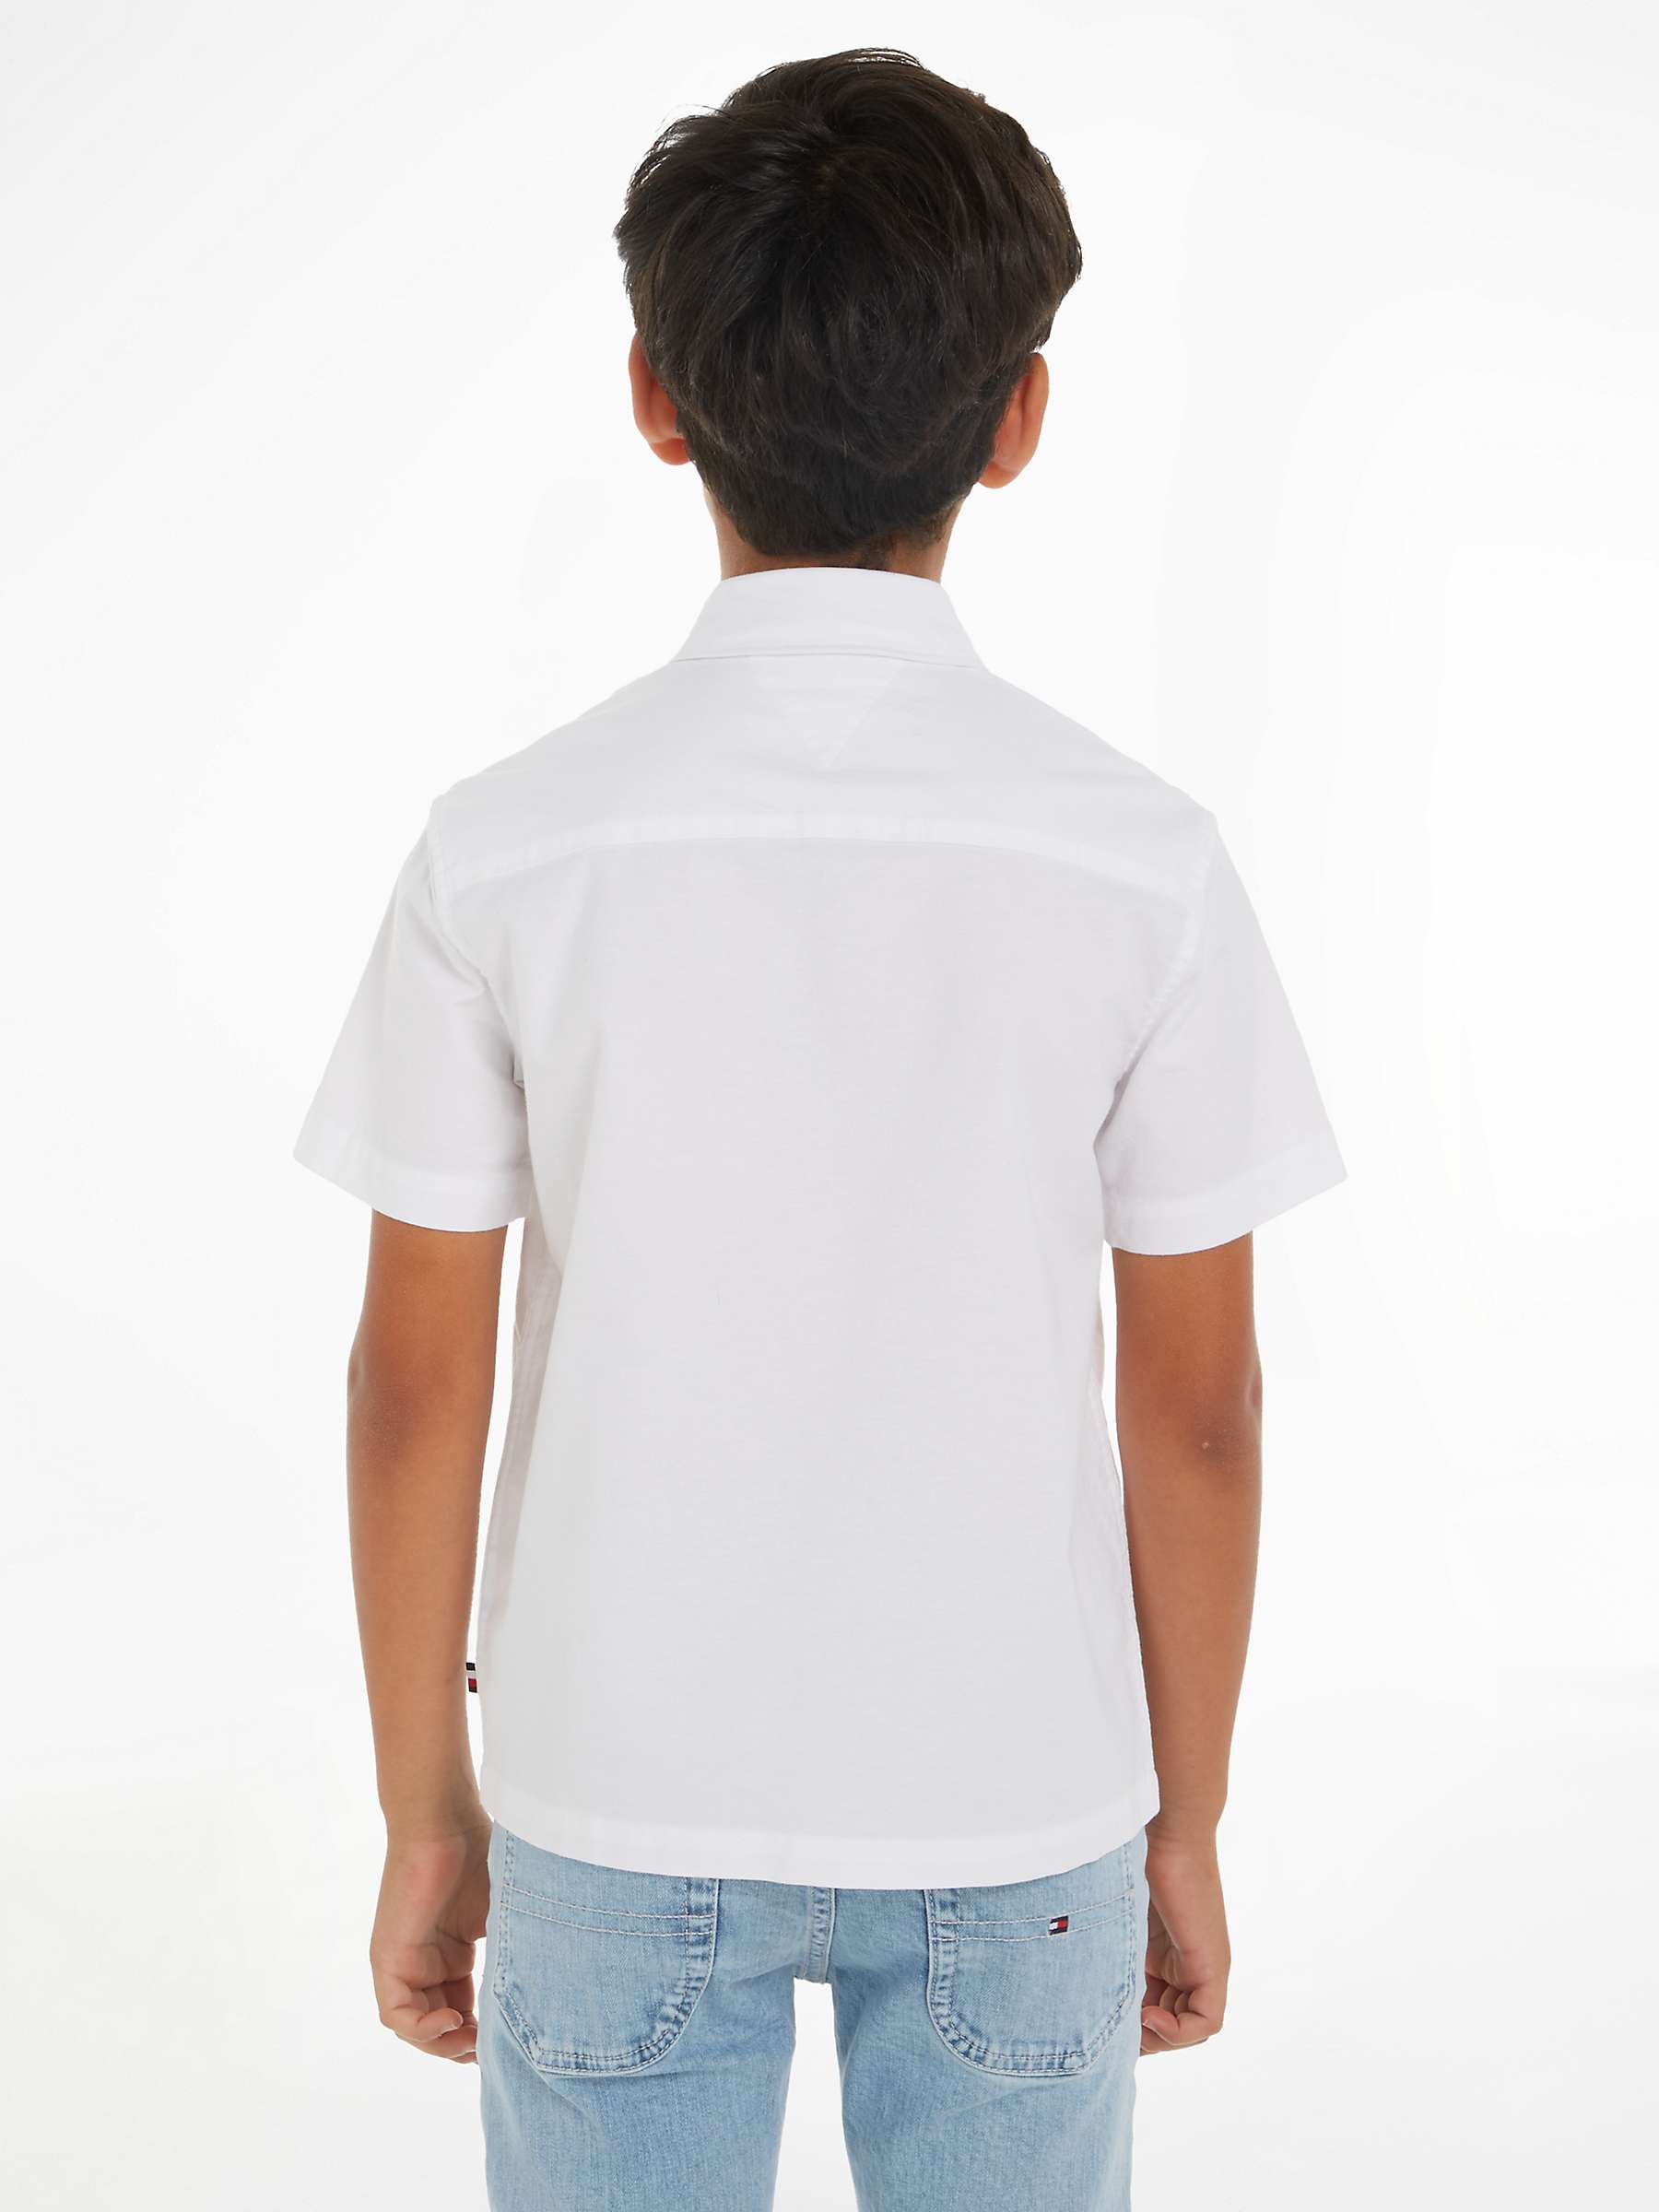 Buy Tommy Hilfiger Kids' Short Sleeve Oxford Shirt Online at johnlewis.com